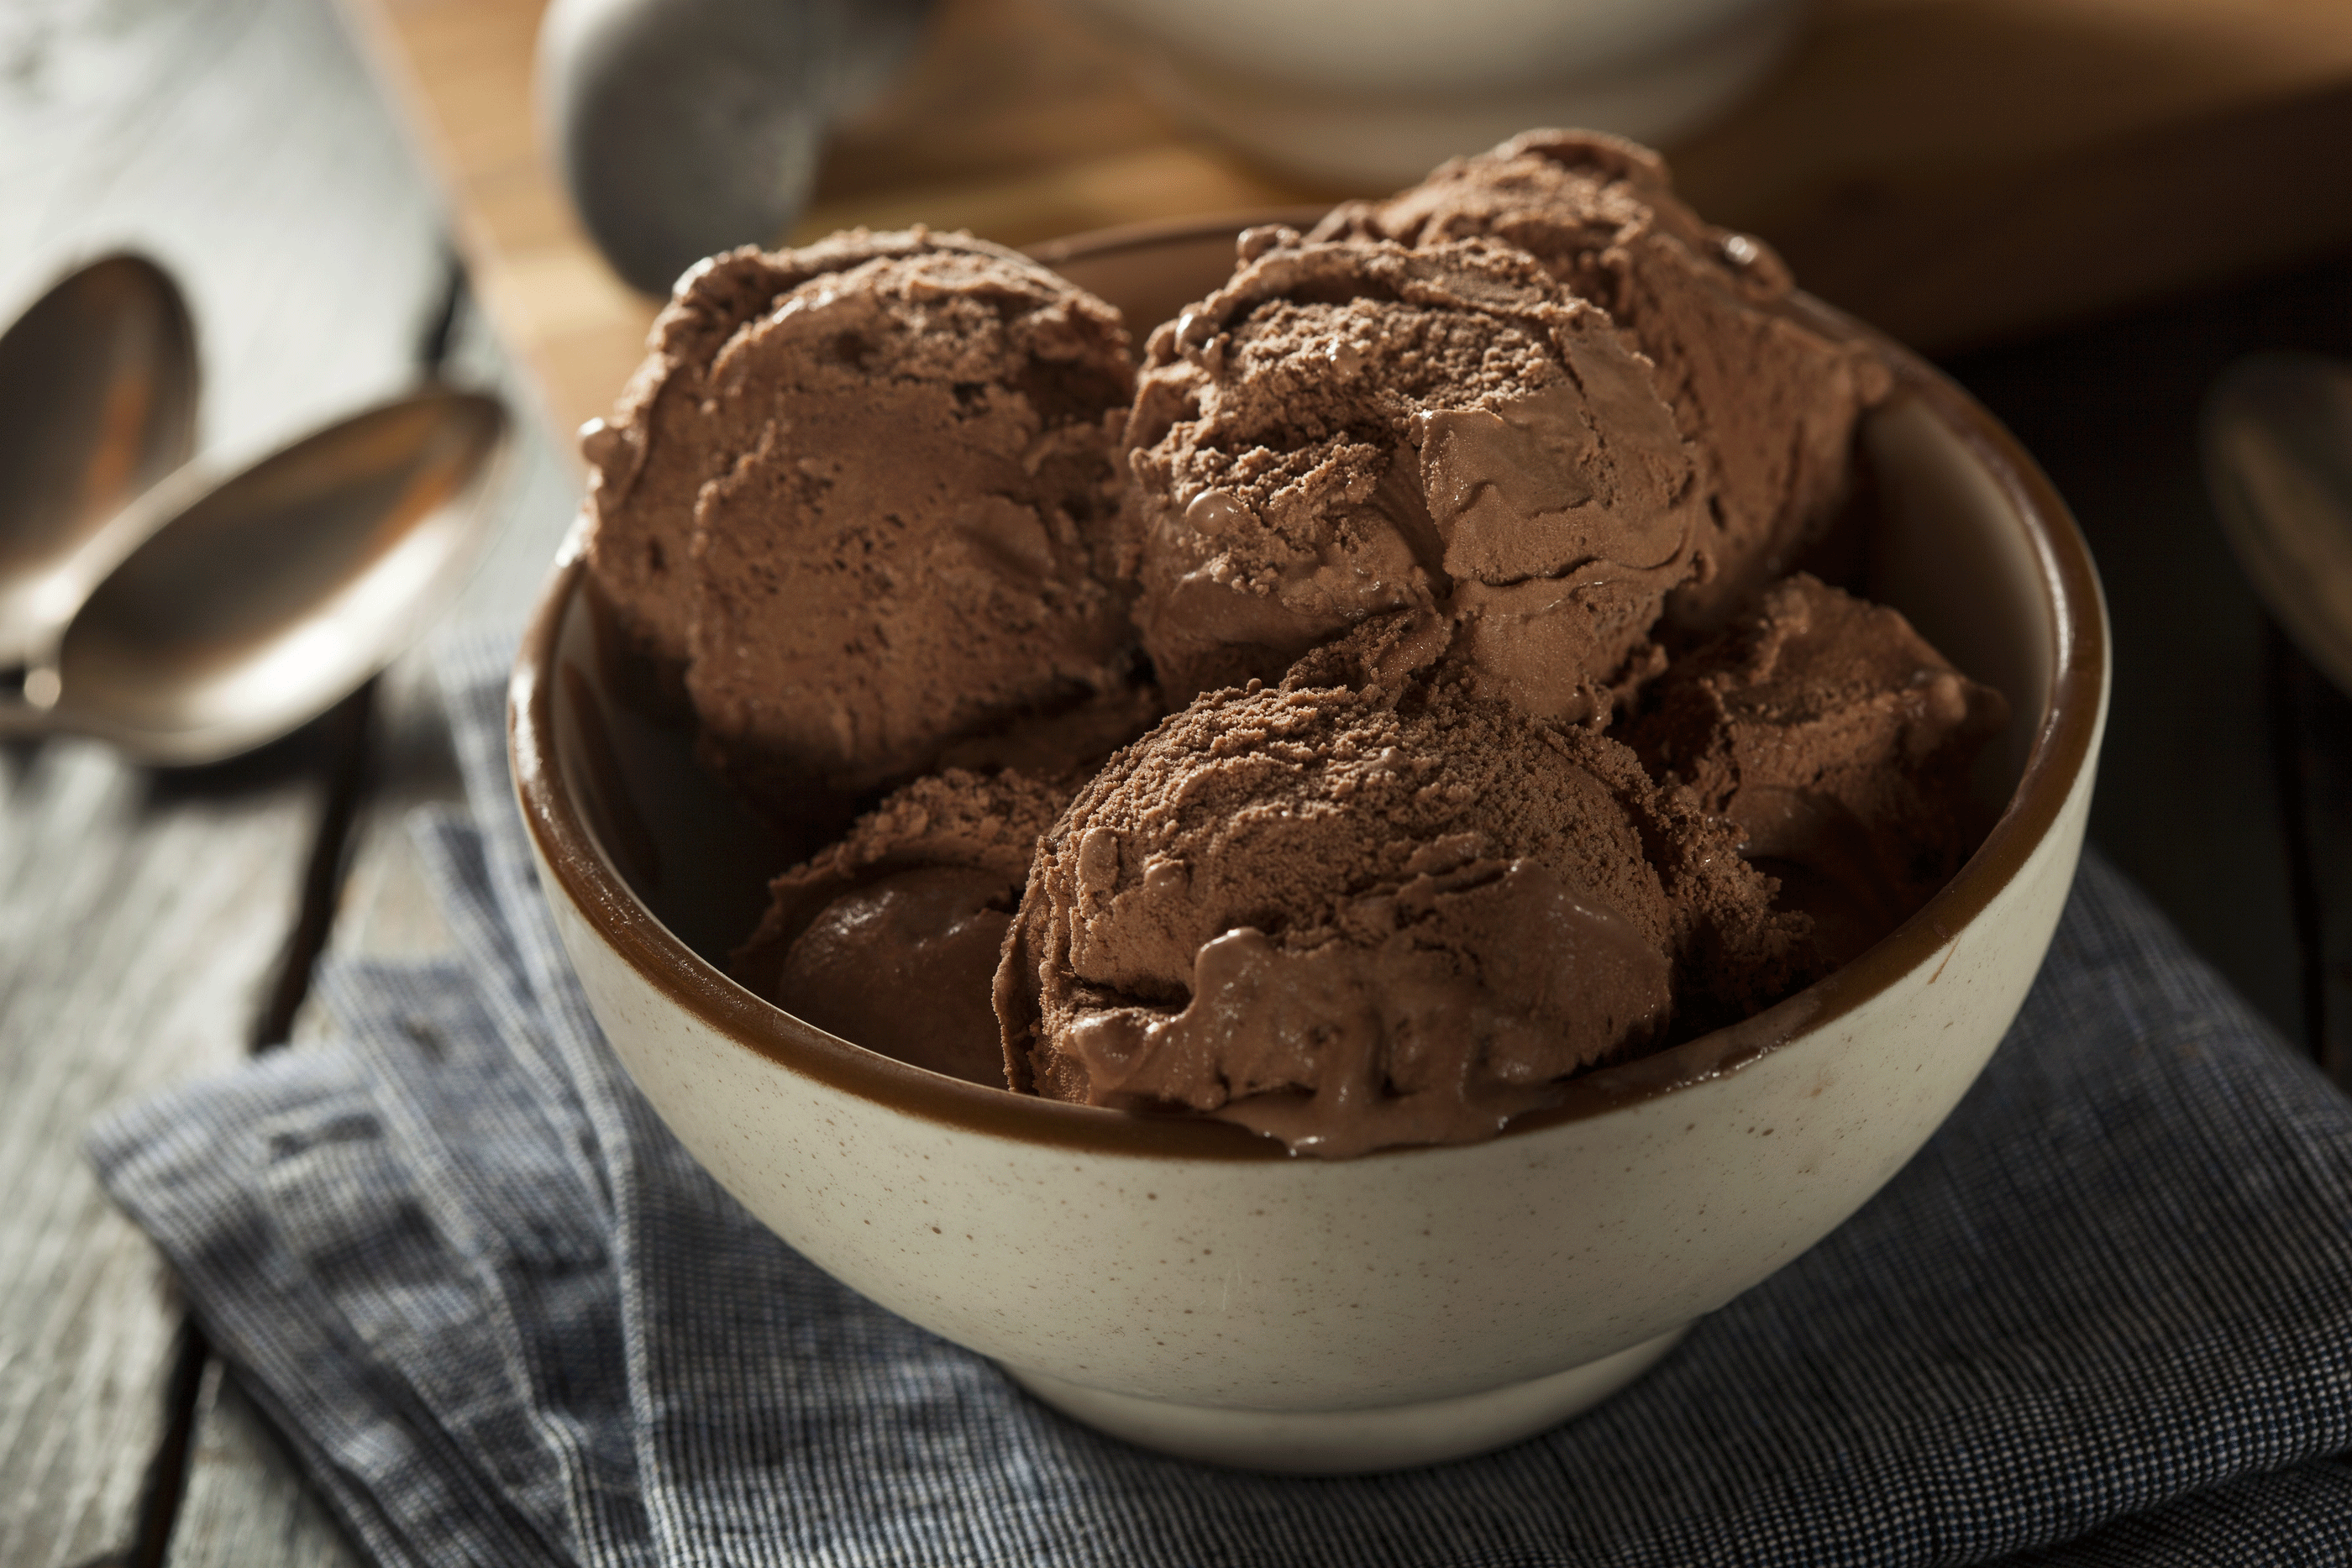 Buz gibi çikolata lezzeti

                                    
                                    
                                    
                                    
                                    
                                    
                                    
                                    
                                    
                                    
                                    Yaz sıcaklarında içinizi serinletecek harika bir lezzet, çikolatalı dondurma.
                                
                                
                                
                                
                                
                                
                                
                                
                                
                                
                                